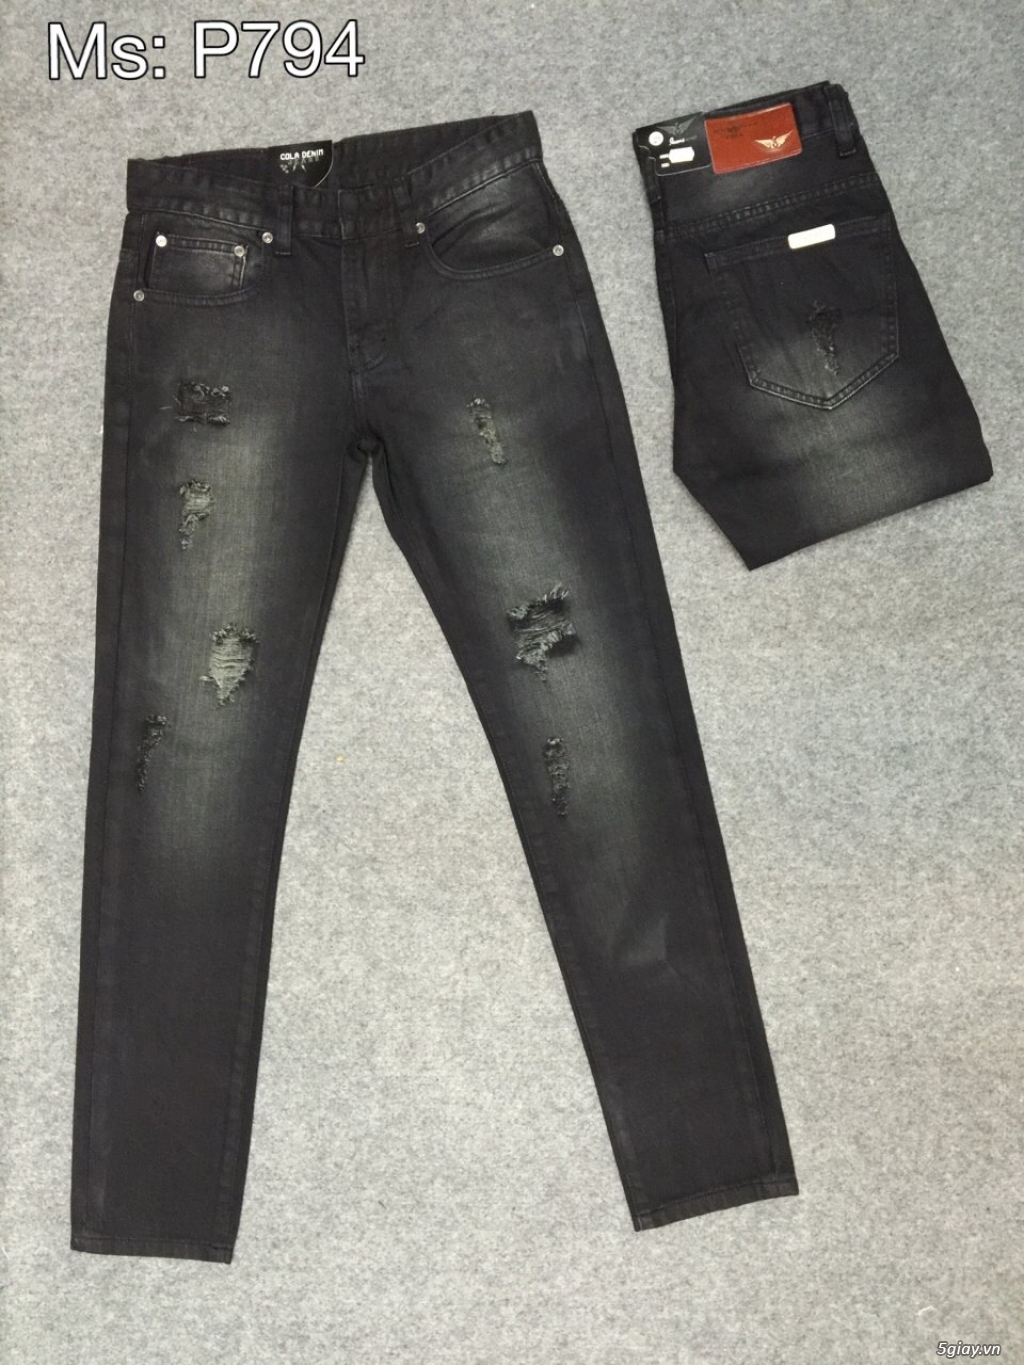 BG STORE - Xưởng Sỉ & Lẻ Quần áo jeans Nam Nữ cao cấp giá rẻ - 5